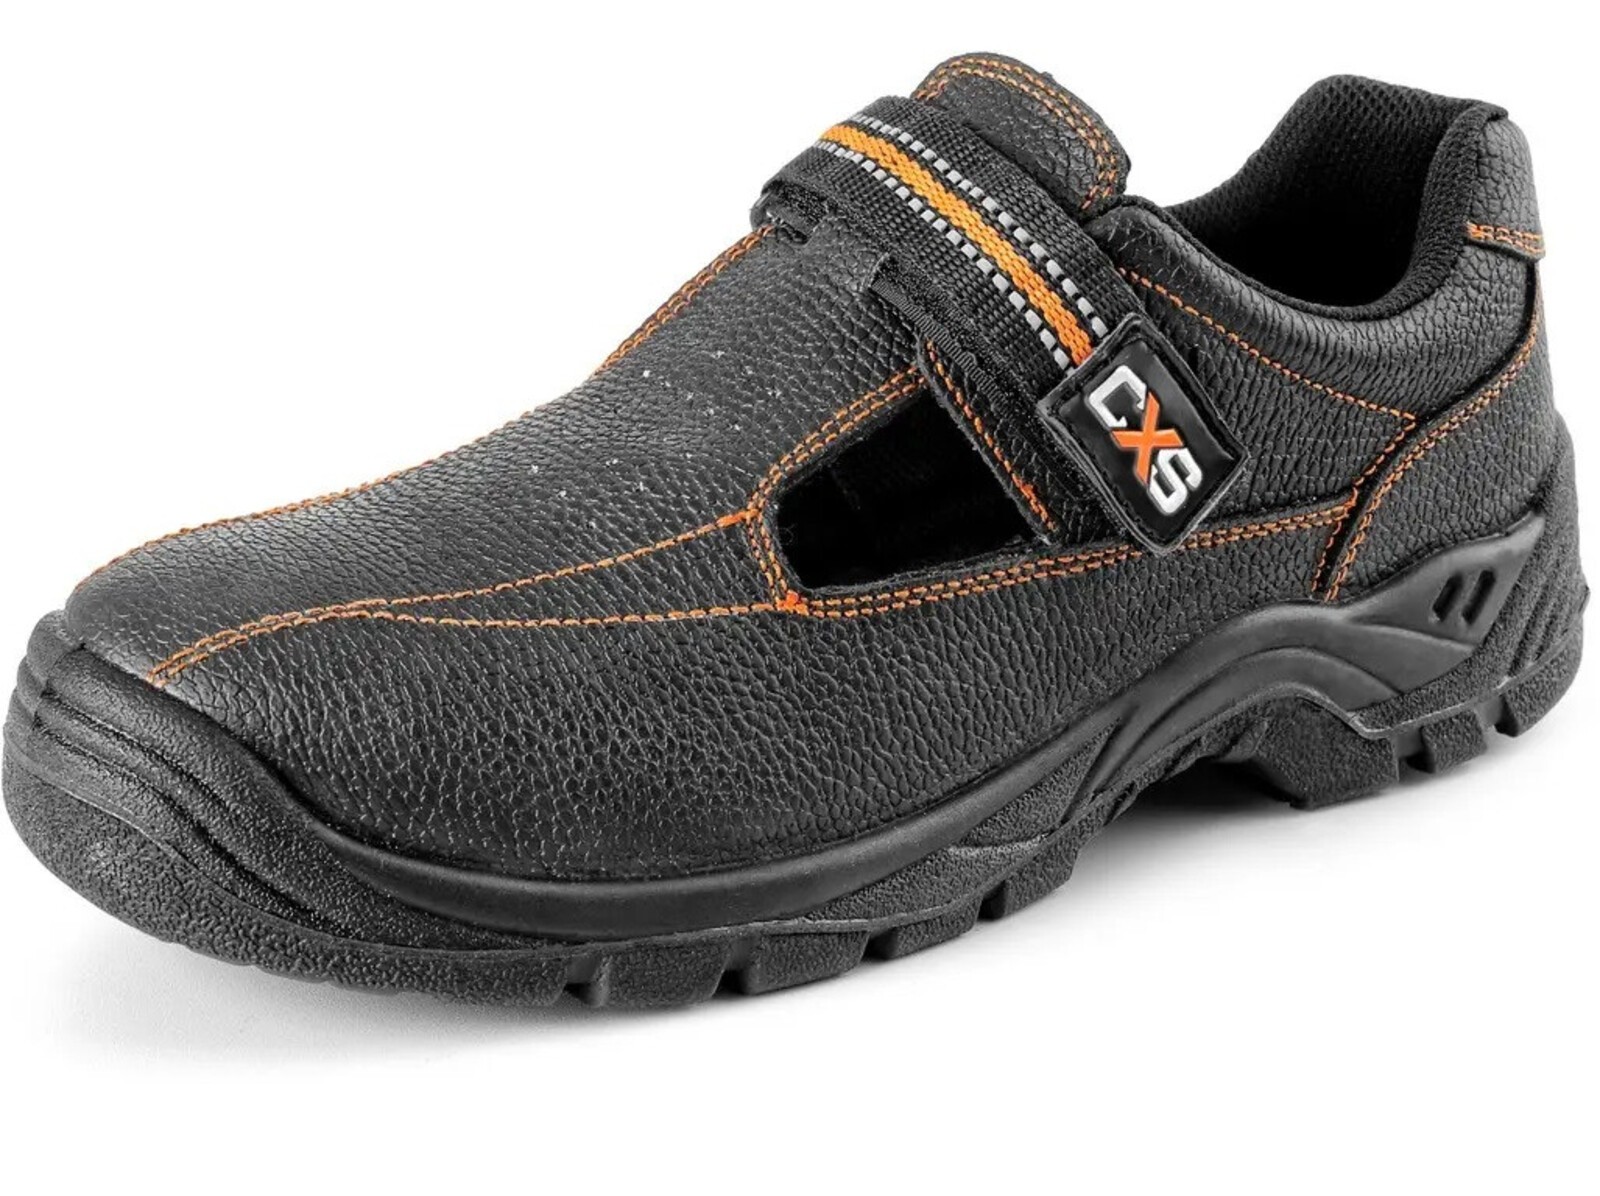 Bezpečnostné sandále CXS Stone Nefrit S1 SRC - veľkosť: 44, farba: čierna/oranžová